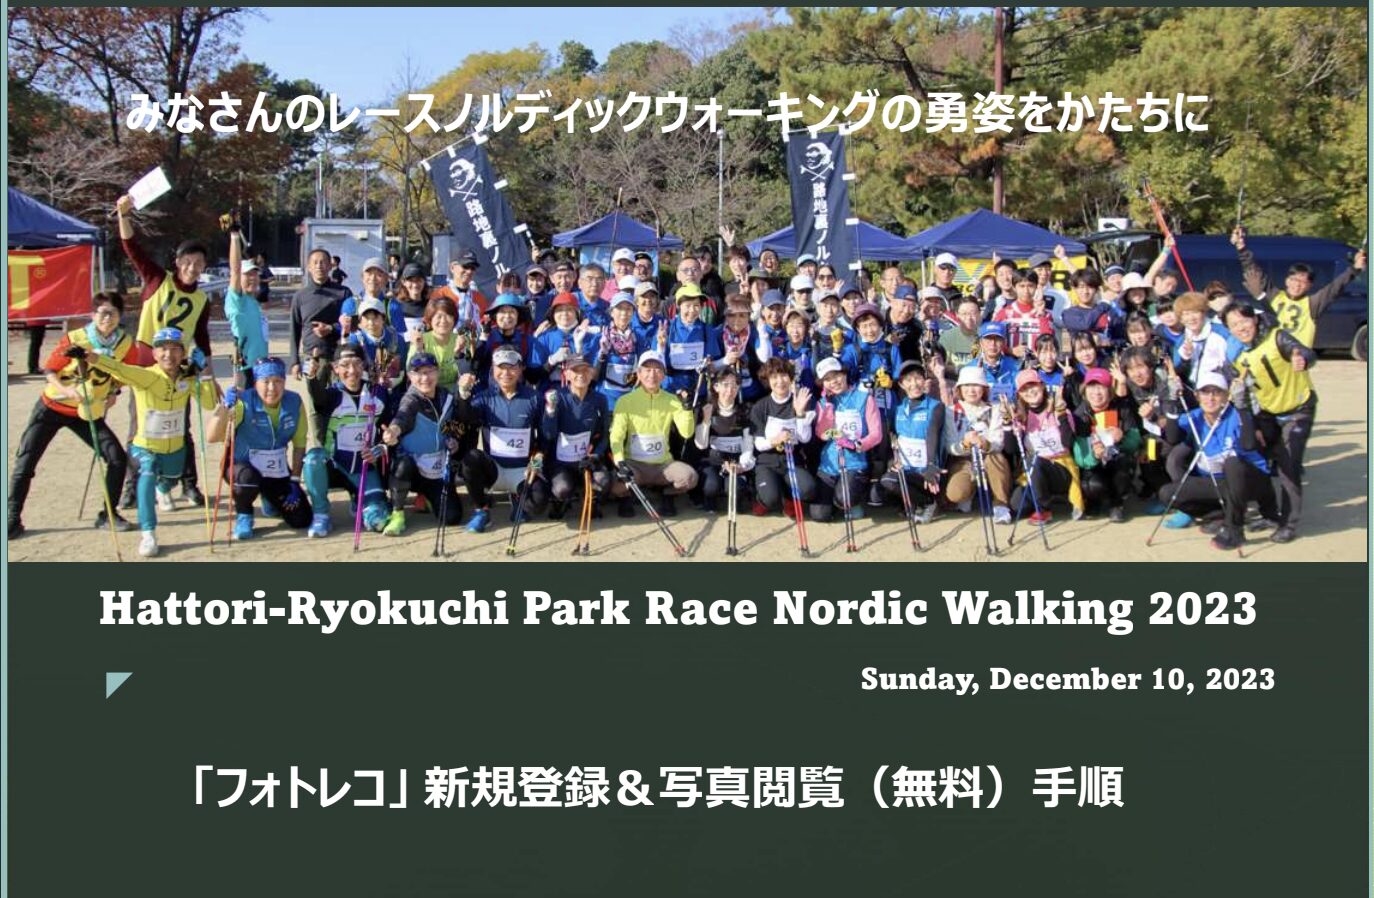 服部緑地公園 RACE NORDIC WALKING 2023 フォトレコ